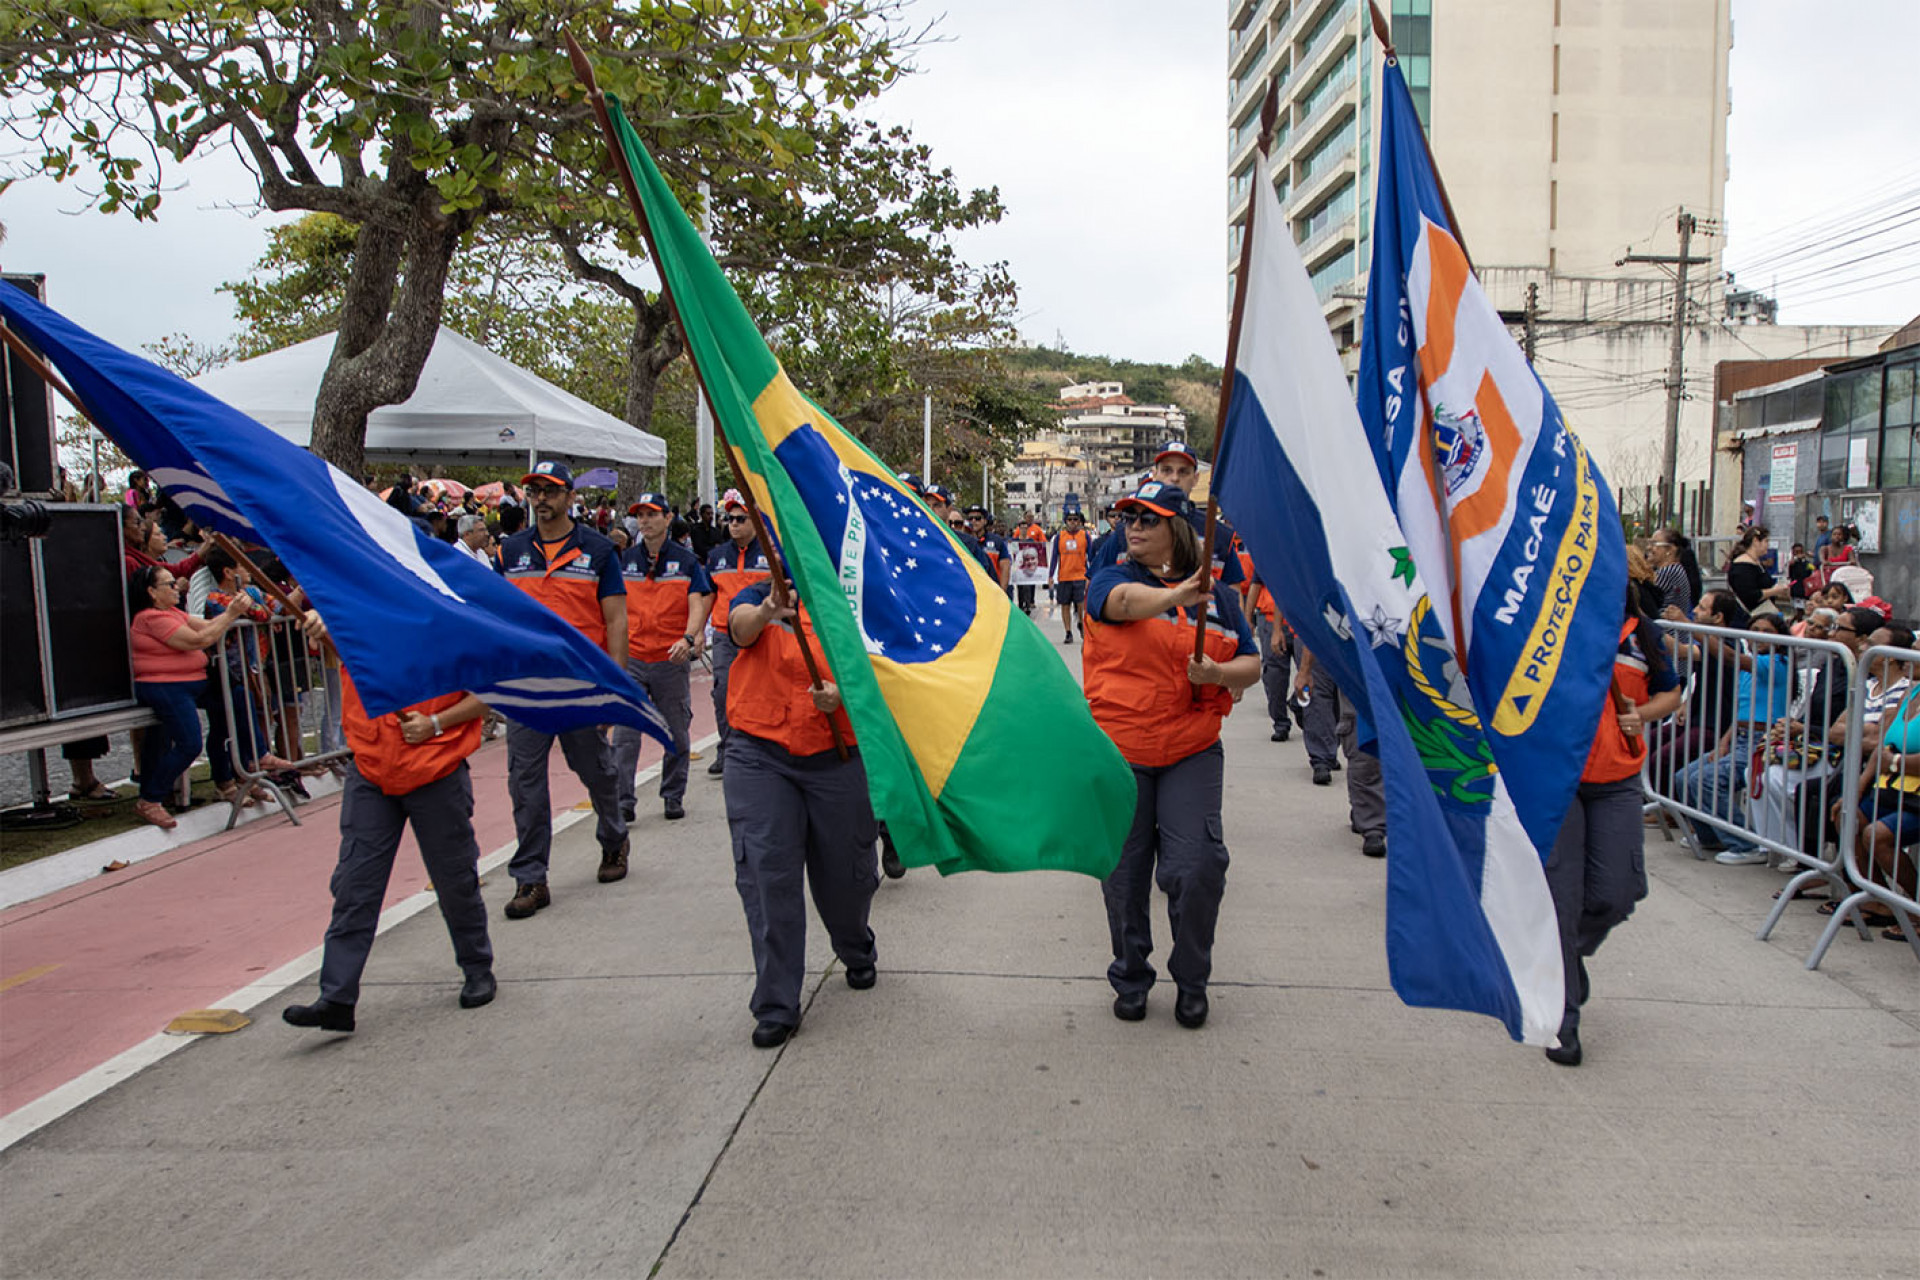 Desfile cívico de 210 anos de Macaé, com o tema da paz, demonstrou a união da comunidade em busca de um futuro melhor - Foto: Moisés Bruno H. Santos